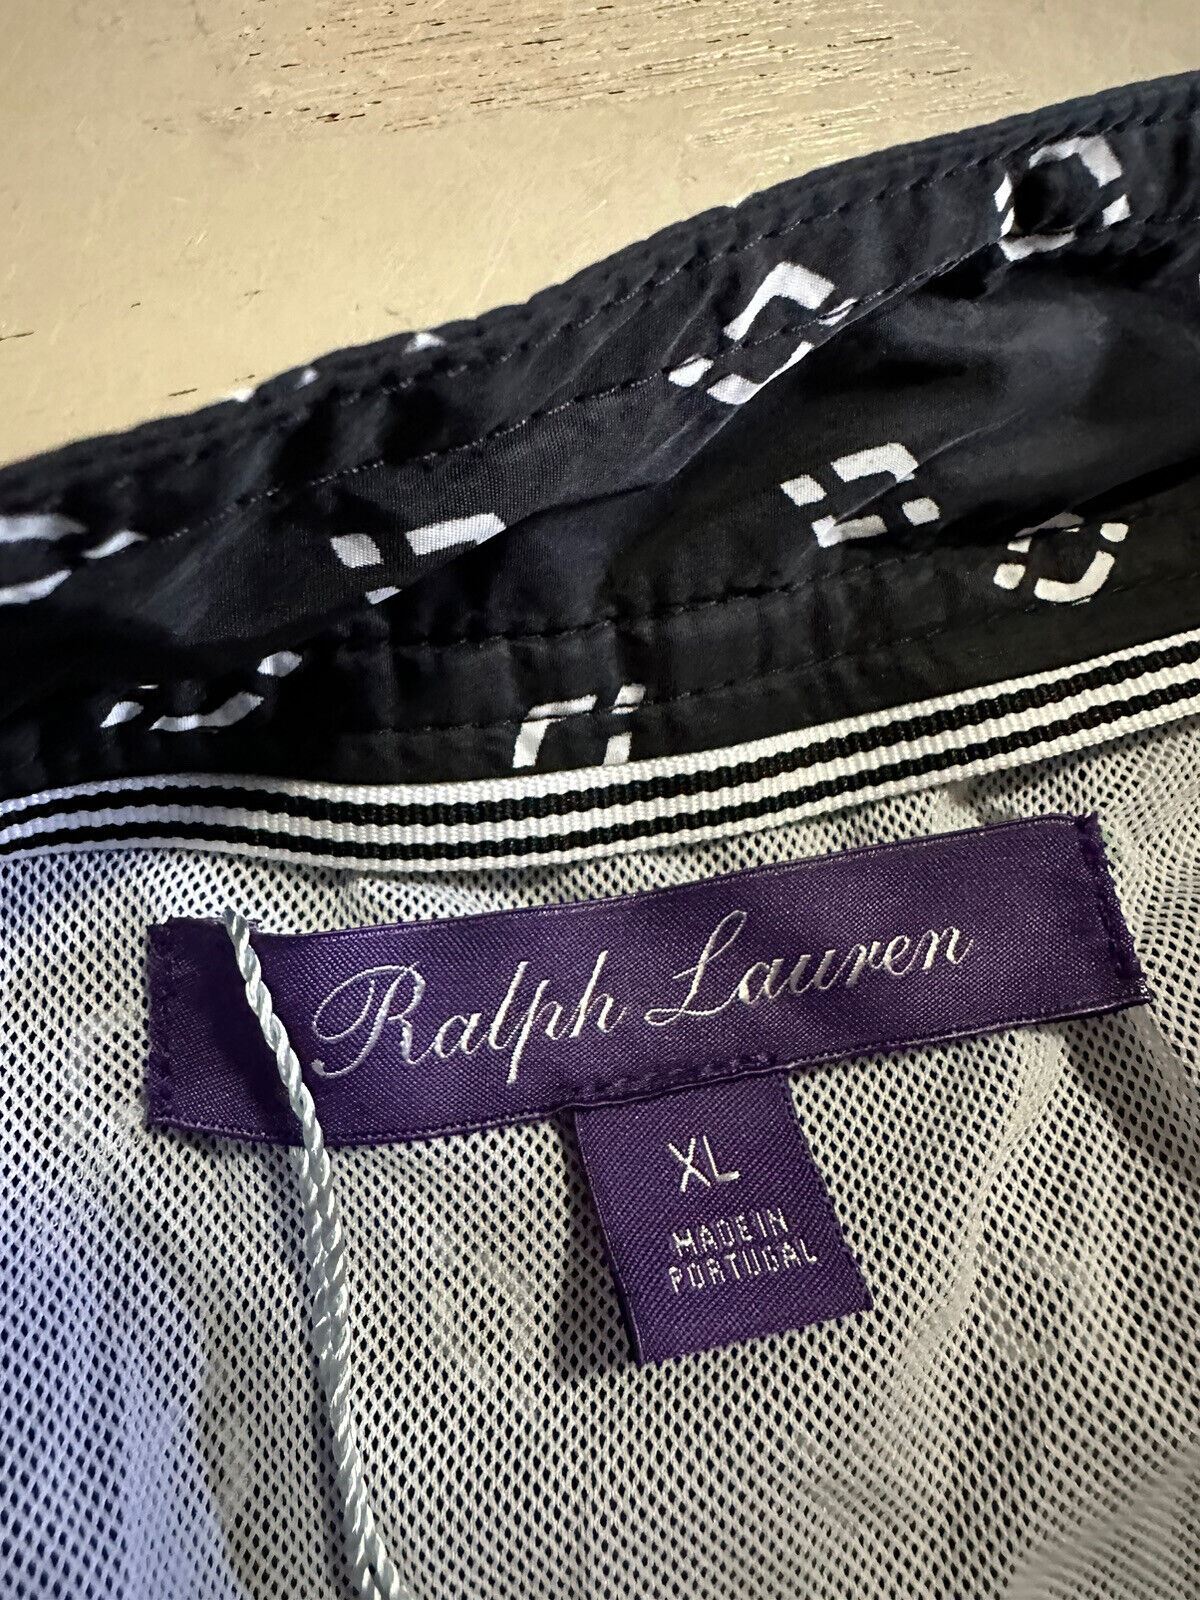 Neu mit Etikett: 395 $ Ralph Lauren Purple Label Herren-Badeshorts Schwarz/Weiß Größe XL (38 US)